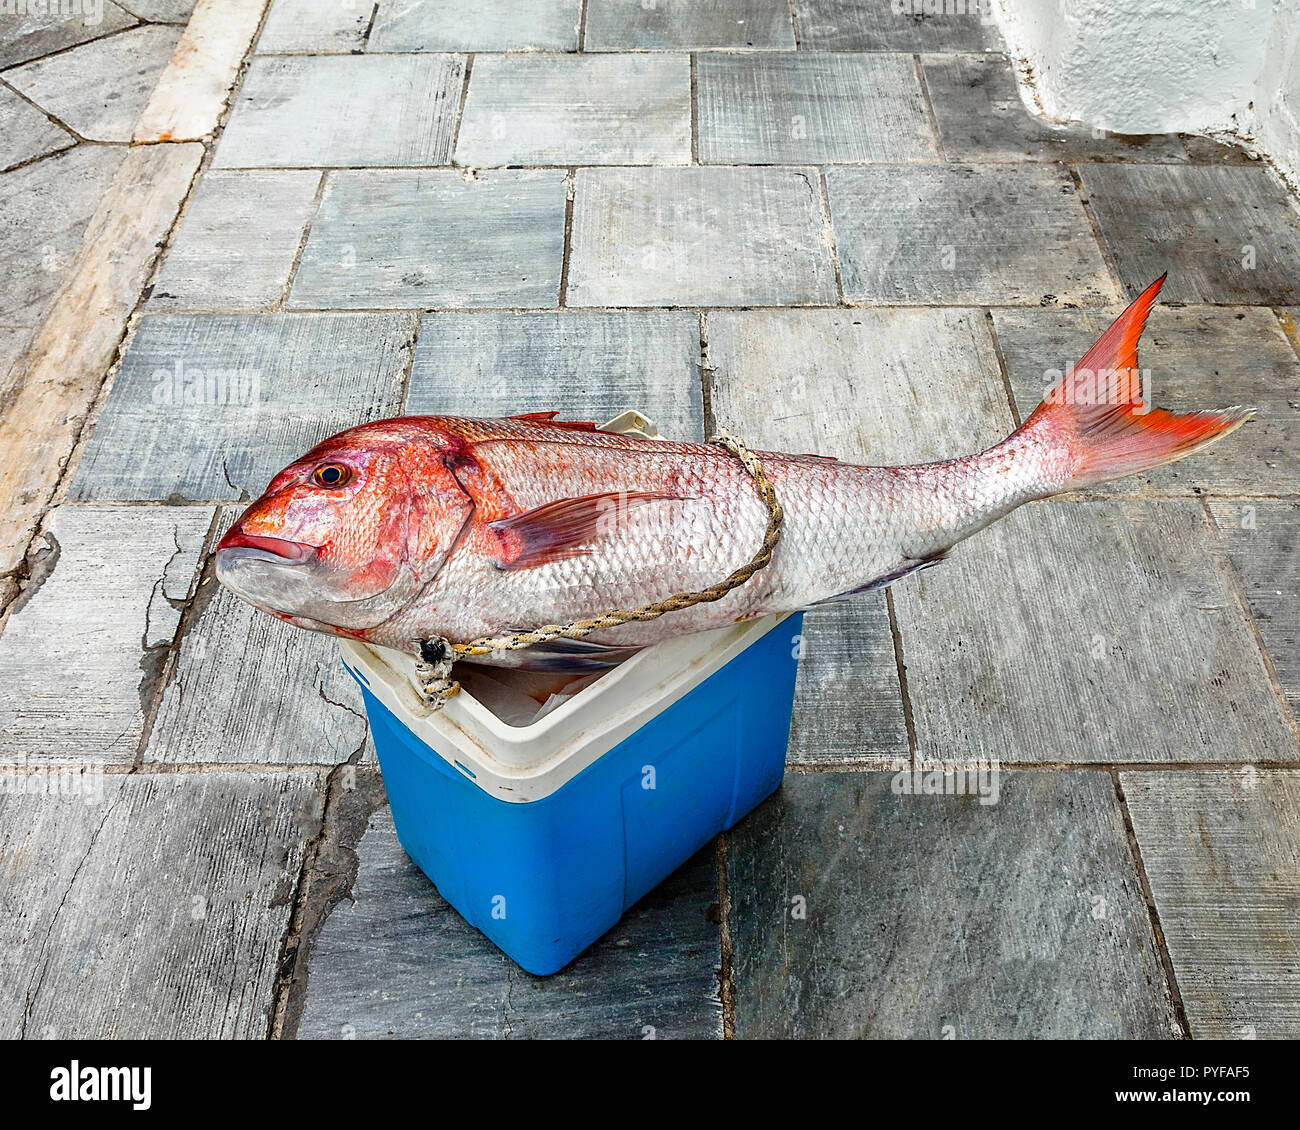 Big Red snapper pesce su un secchiello per il ghiaccio sul marciapiede della città. Close-up. Immagine di stock. Foto Stock